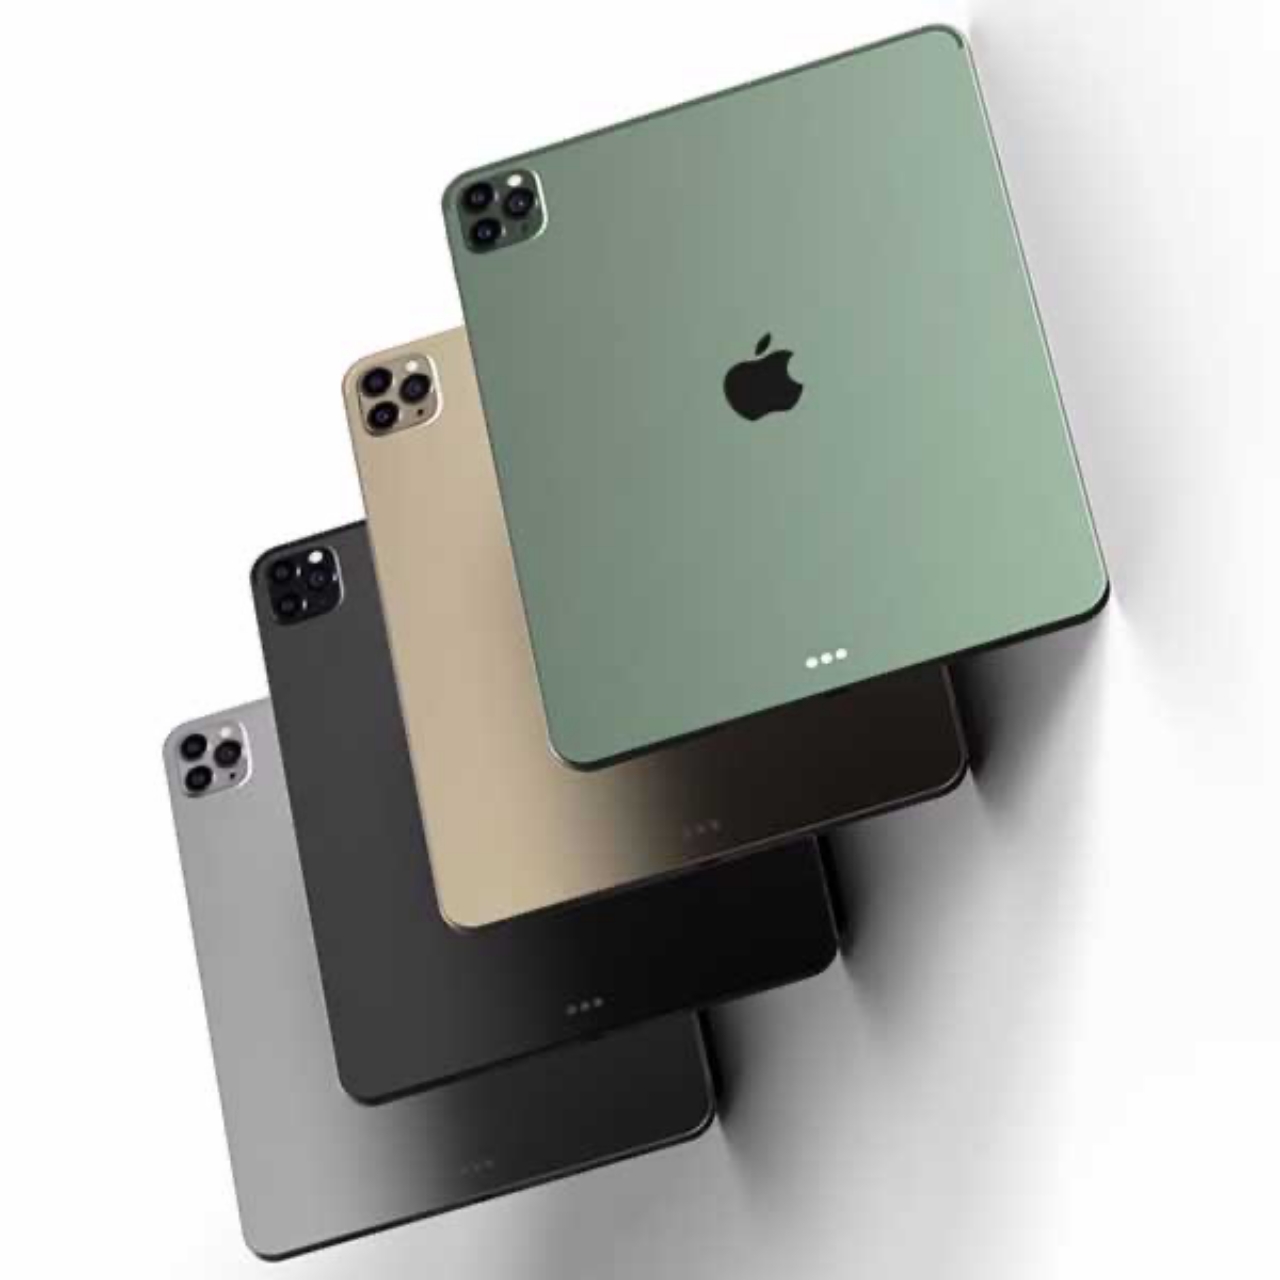 Apple iPad Pro 2021 sẽ được nâng cấp về màn hình và hỗ trợ kết nối mạng 5G mmWave siêu nhanh